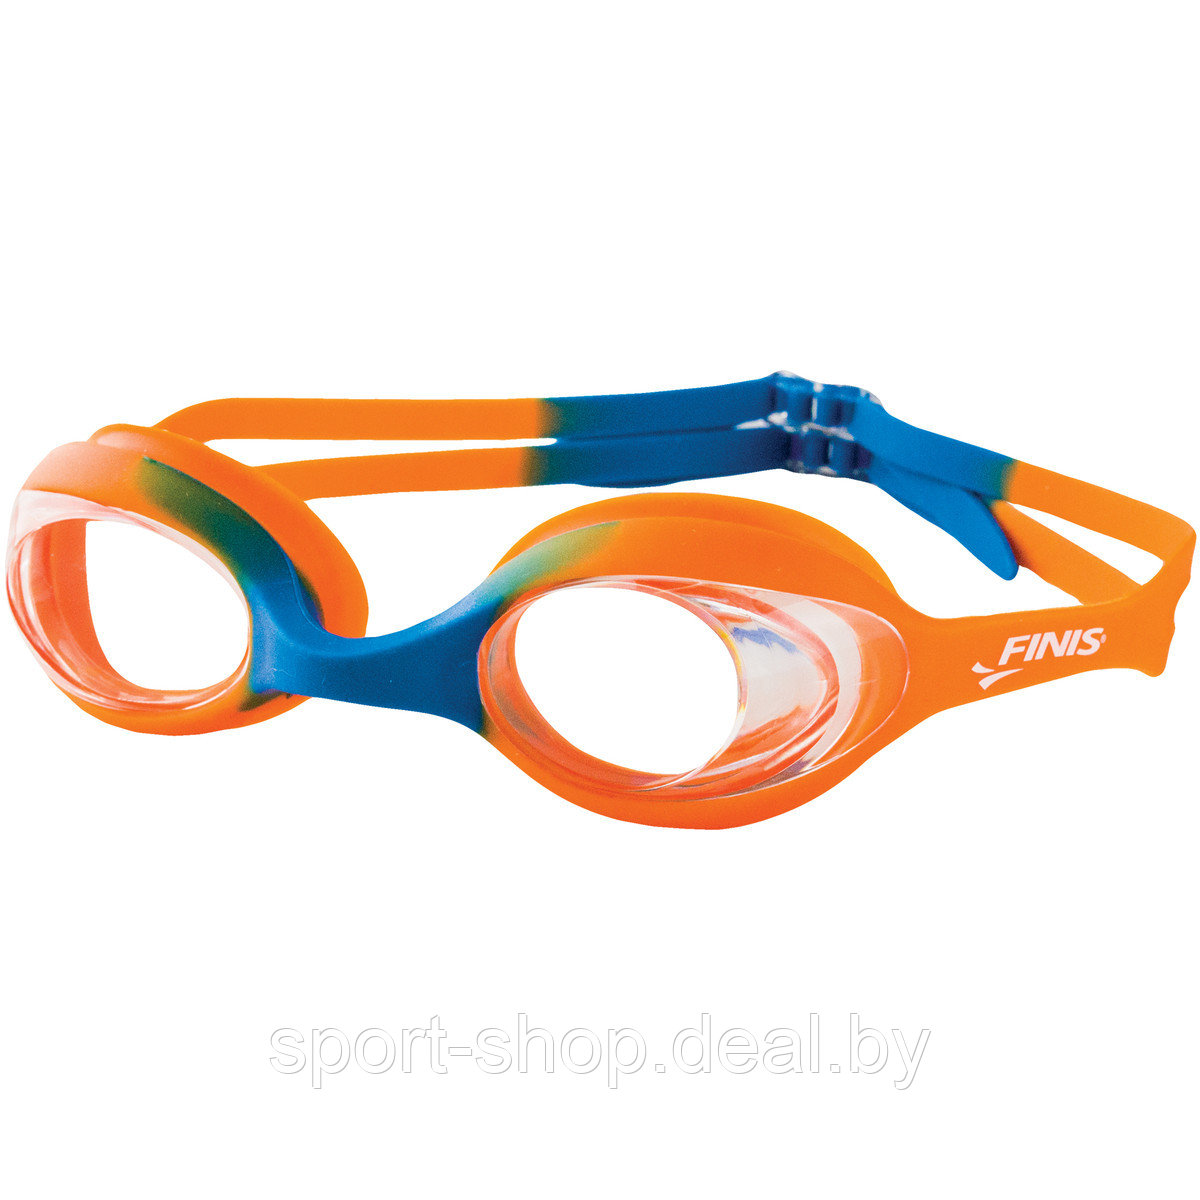 Детские очки для плавания FINIS Orange Blue/Clear 3.45.011.129, очки для плавания,очки для плавания в бассейне